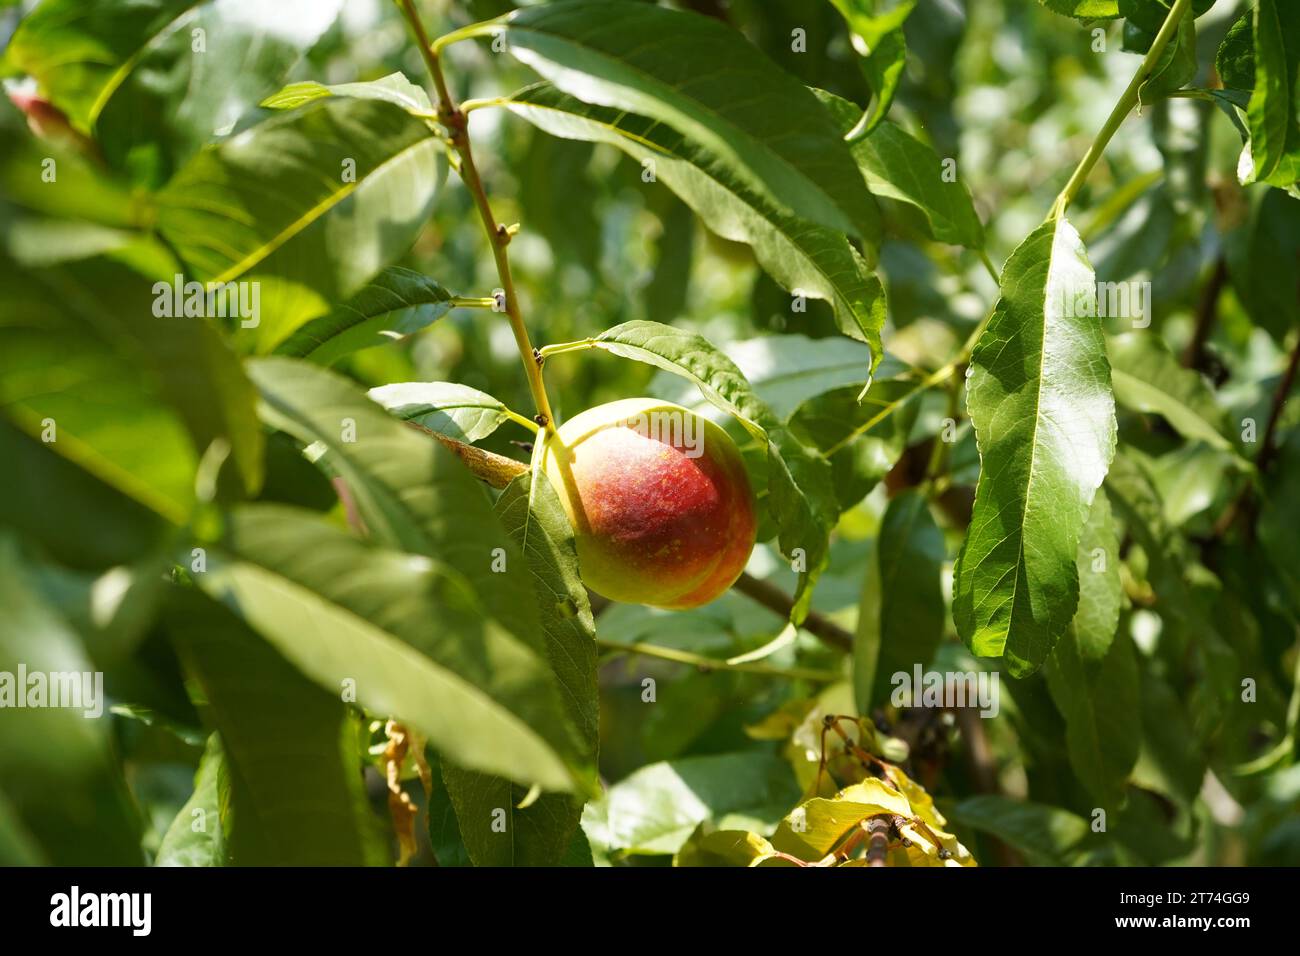 Peach, common peach (Prunus persica) Stock Photo